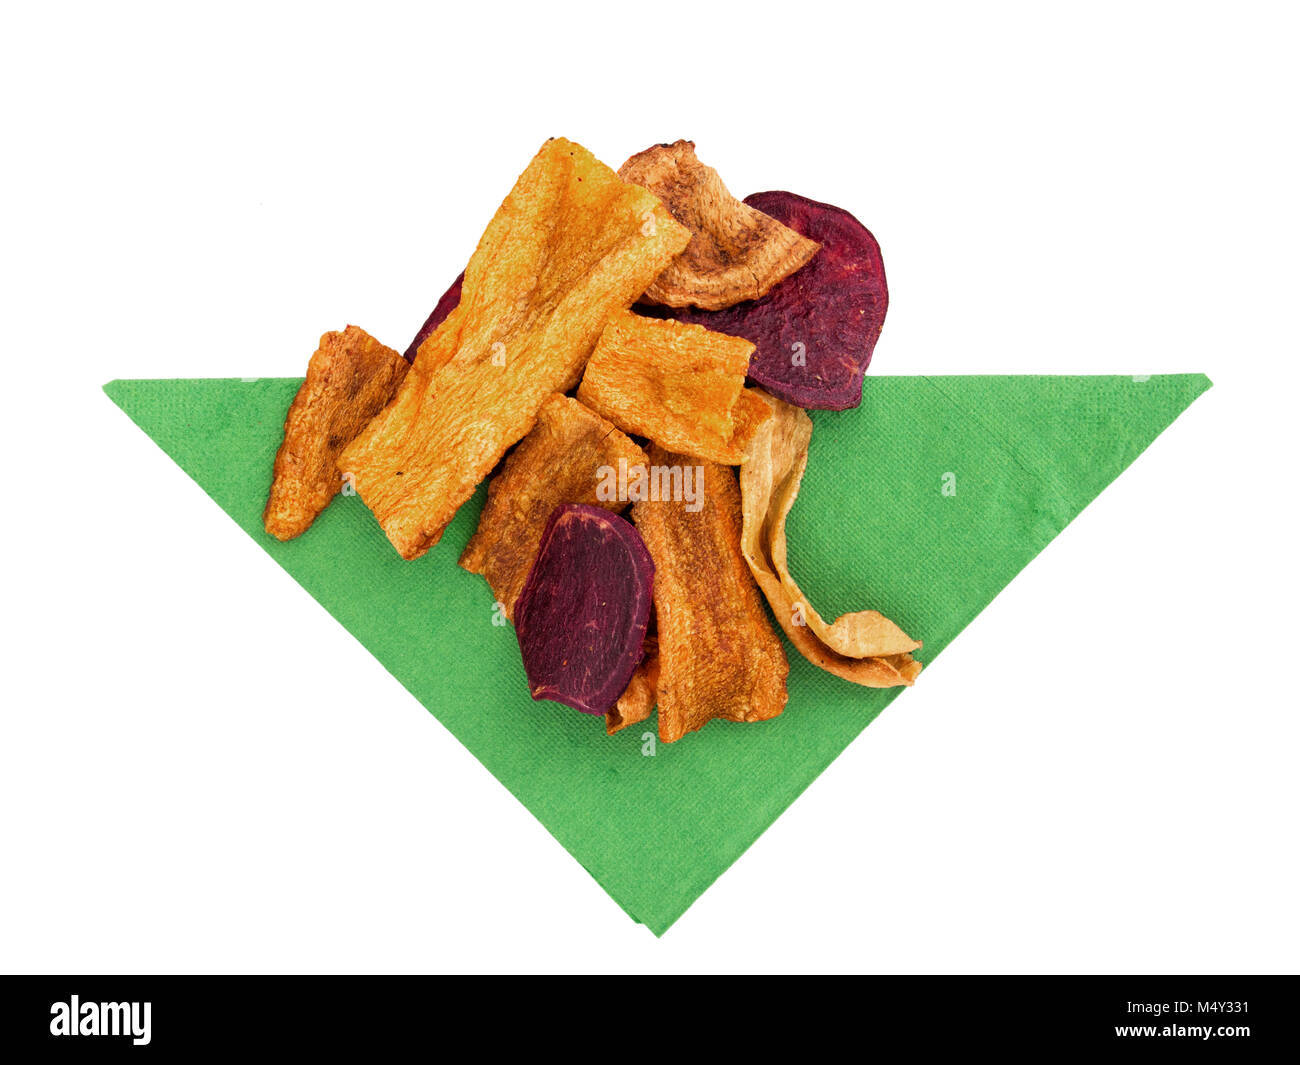 Hortalizas, Patatas fritas crujientes. Snack en servilleta verde brillante. Foto de stock